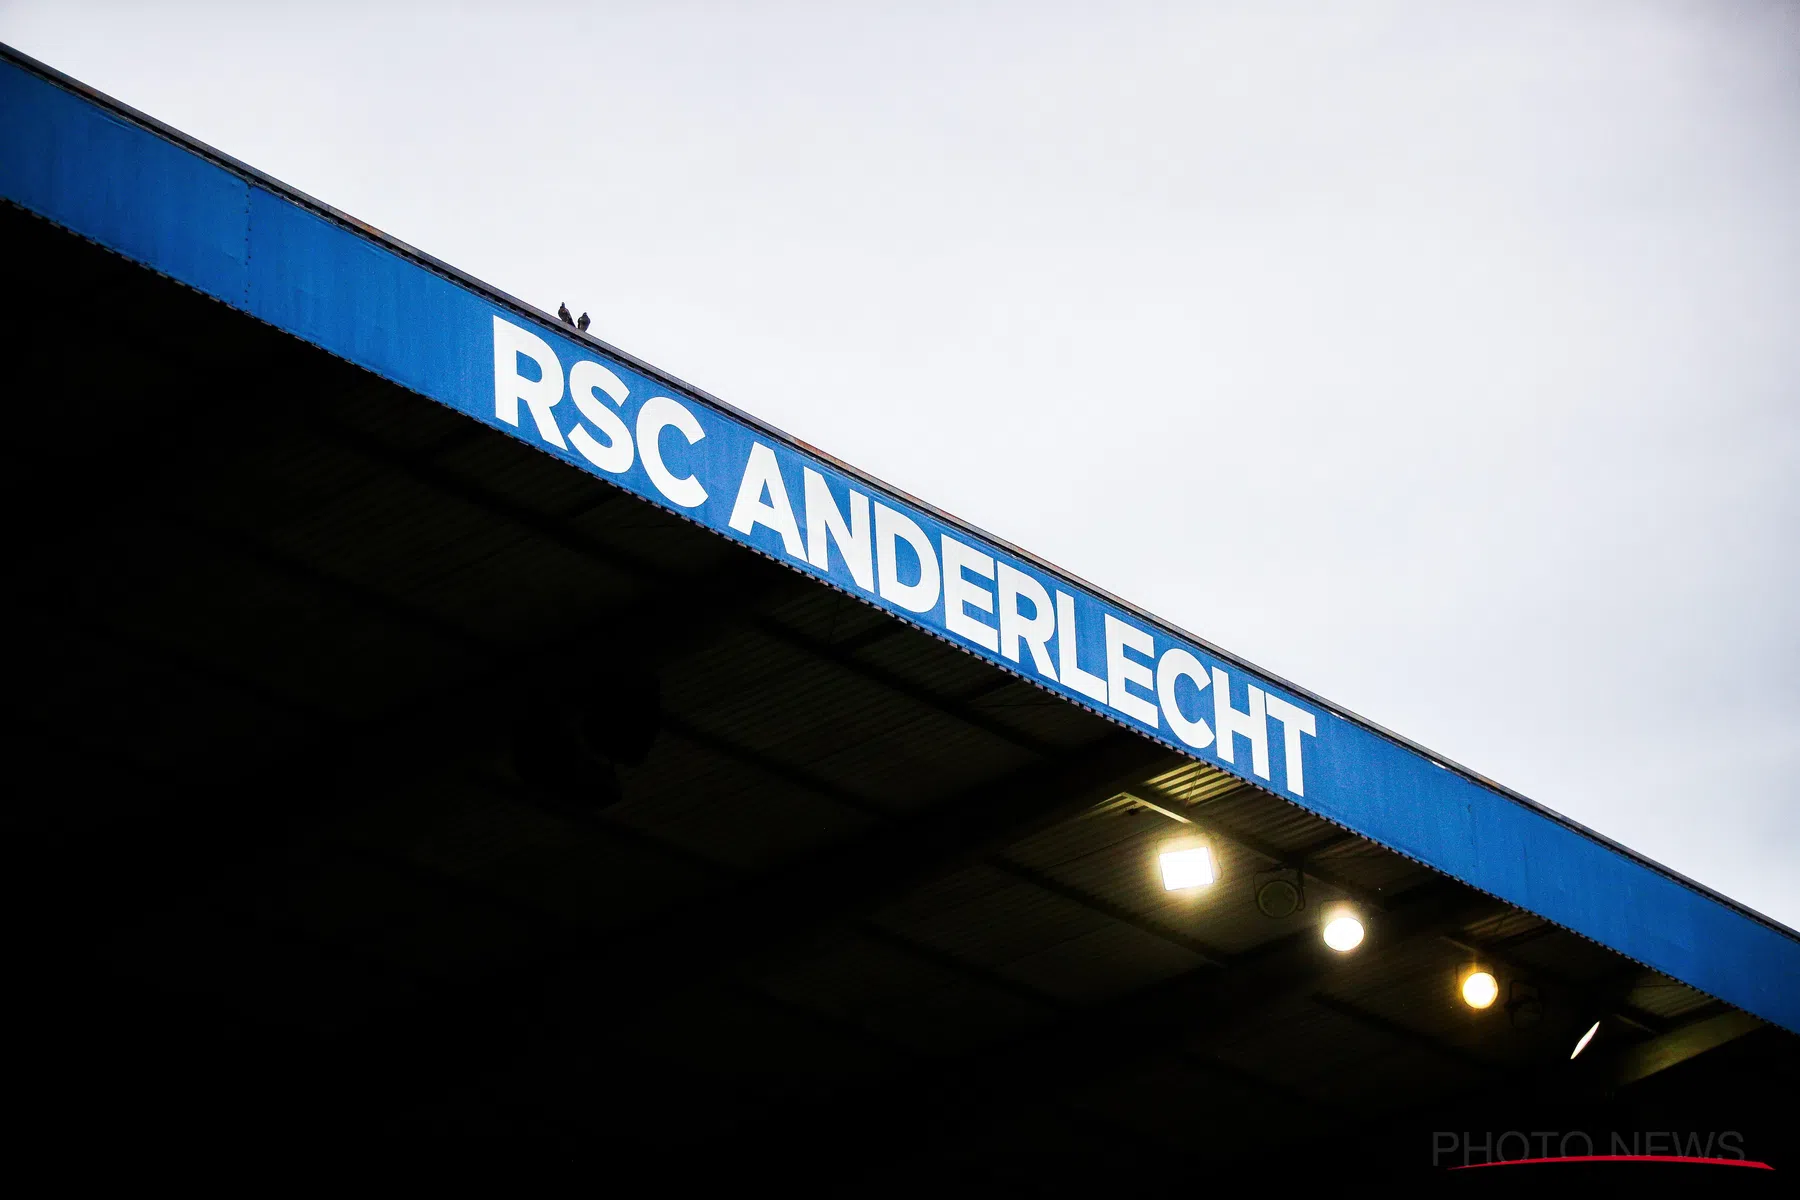 OFFICIEEL: 15-jarig talent tekent profcontract bij Anderlecht